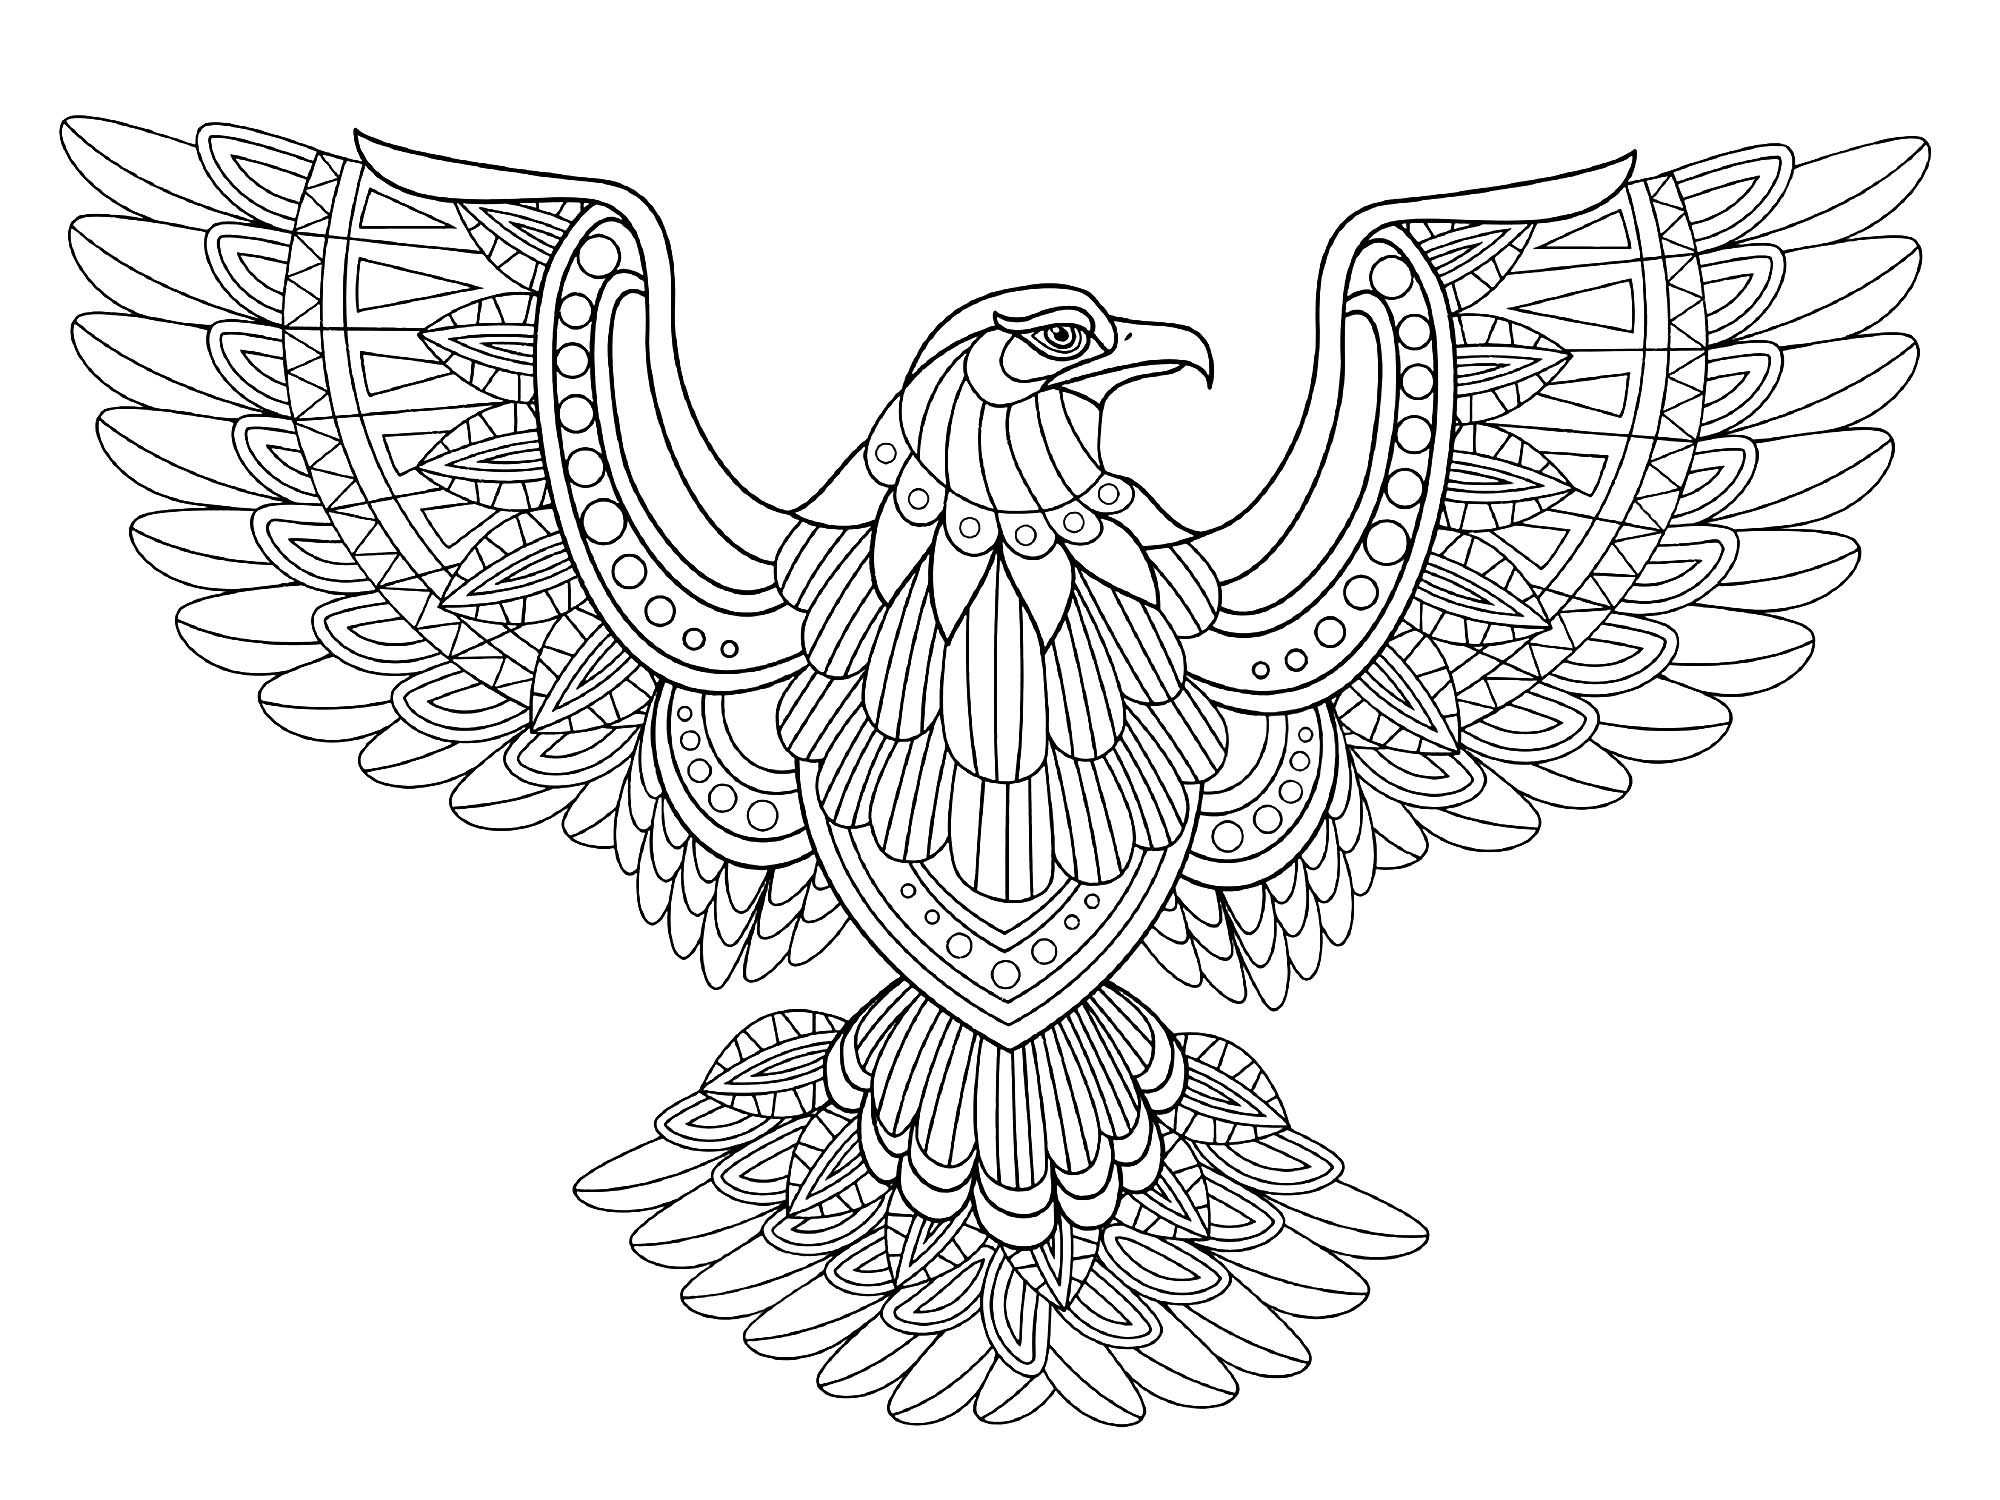 Adler mit ausgebreiteten Flügeln, Künstler : Kchung   Quelle : 123rf